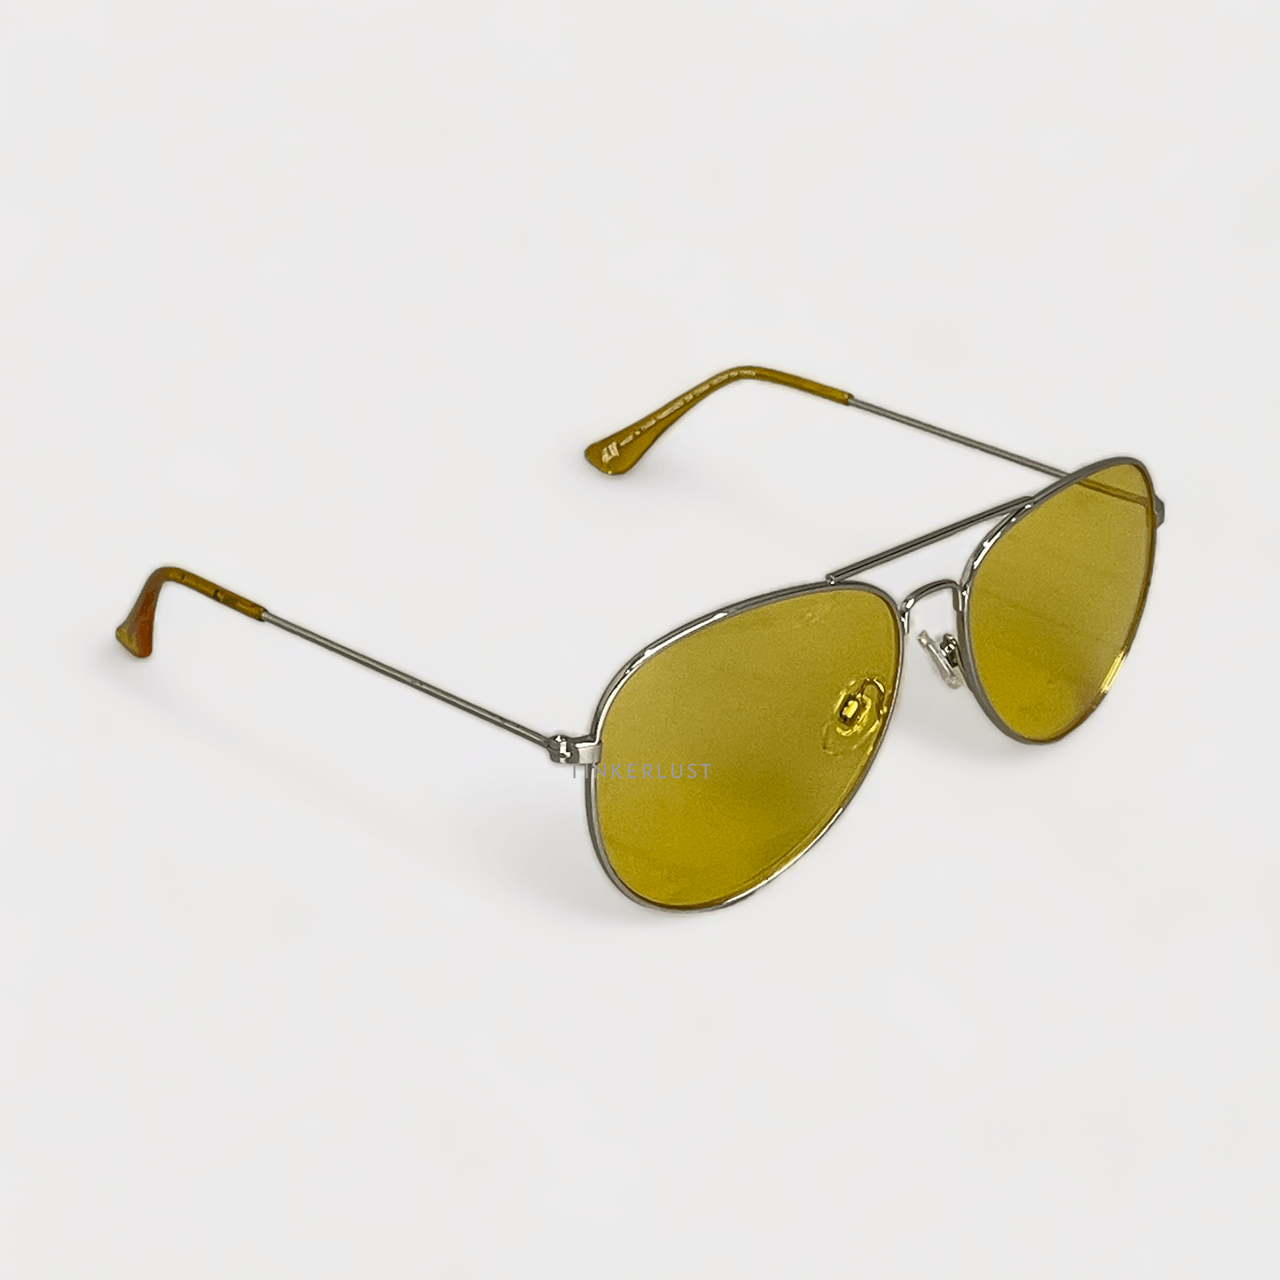 H&M Yellow Sunglasses